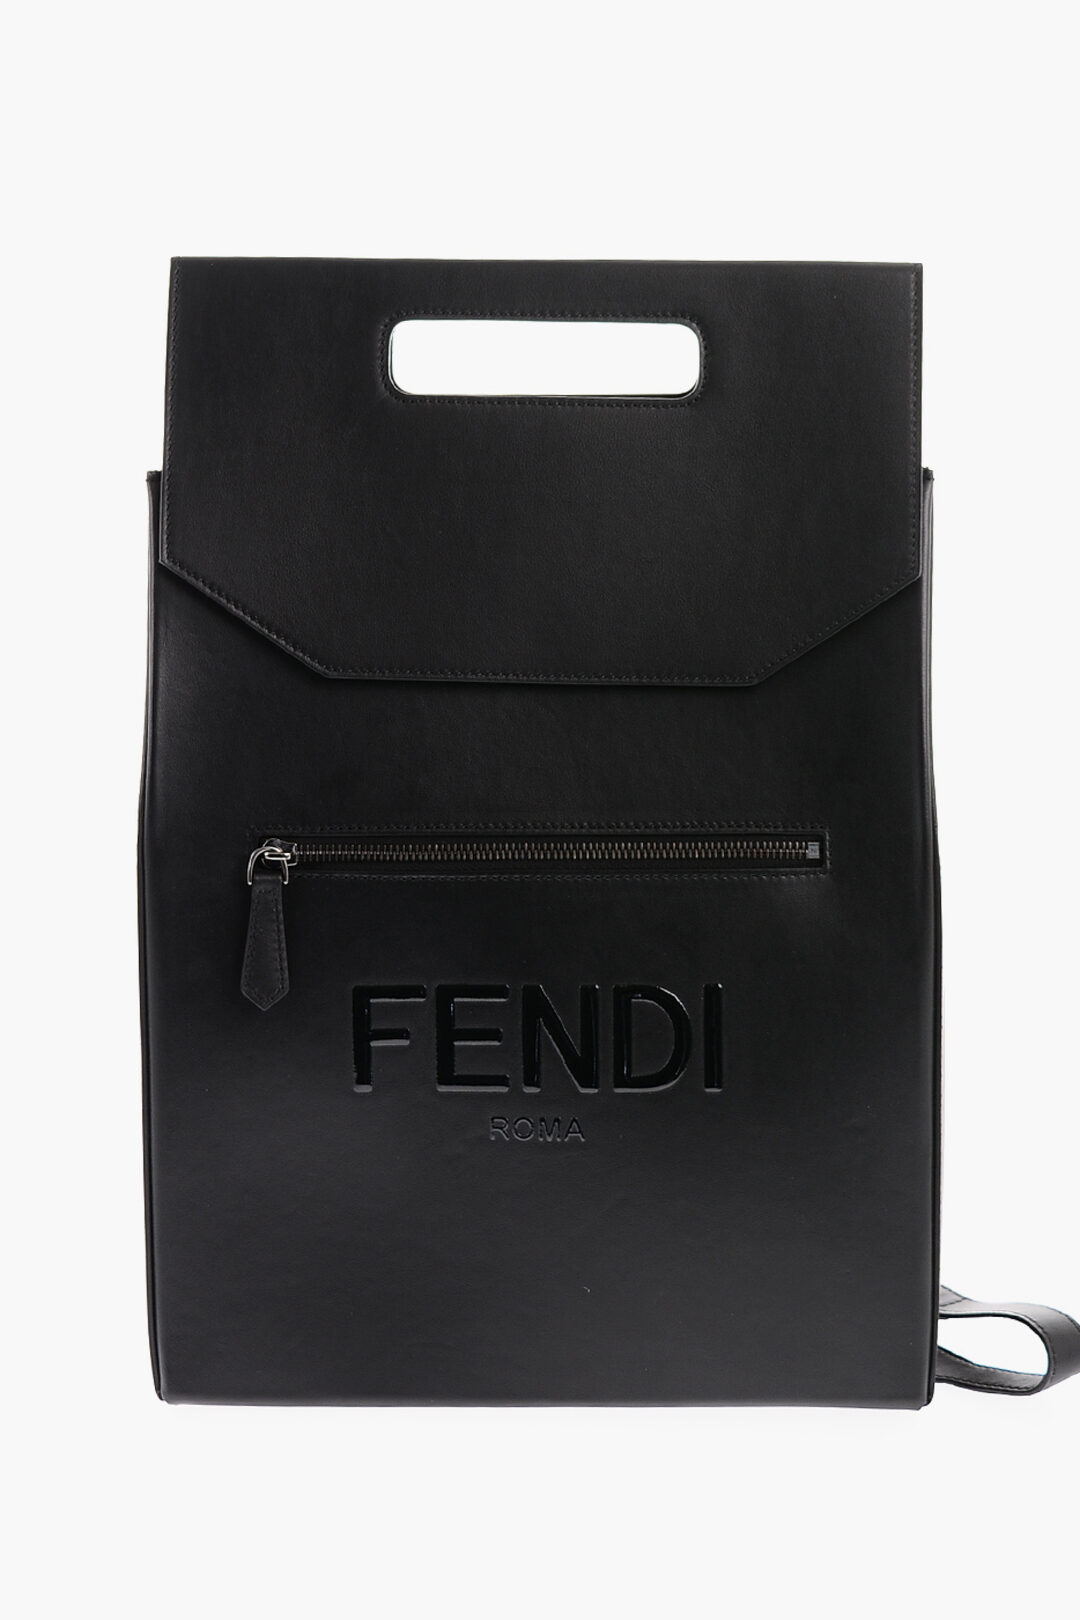 NB - Luxury Bag - FED - 086 | Fendi bags, Fendi, Fendi peekaboo bag